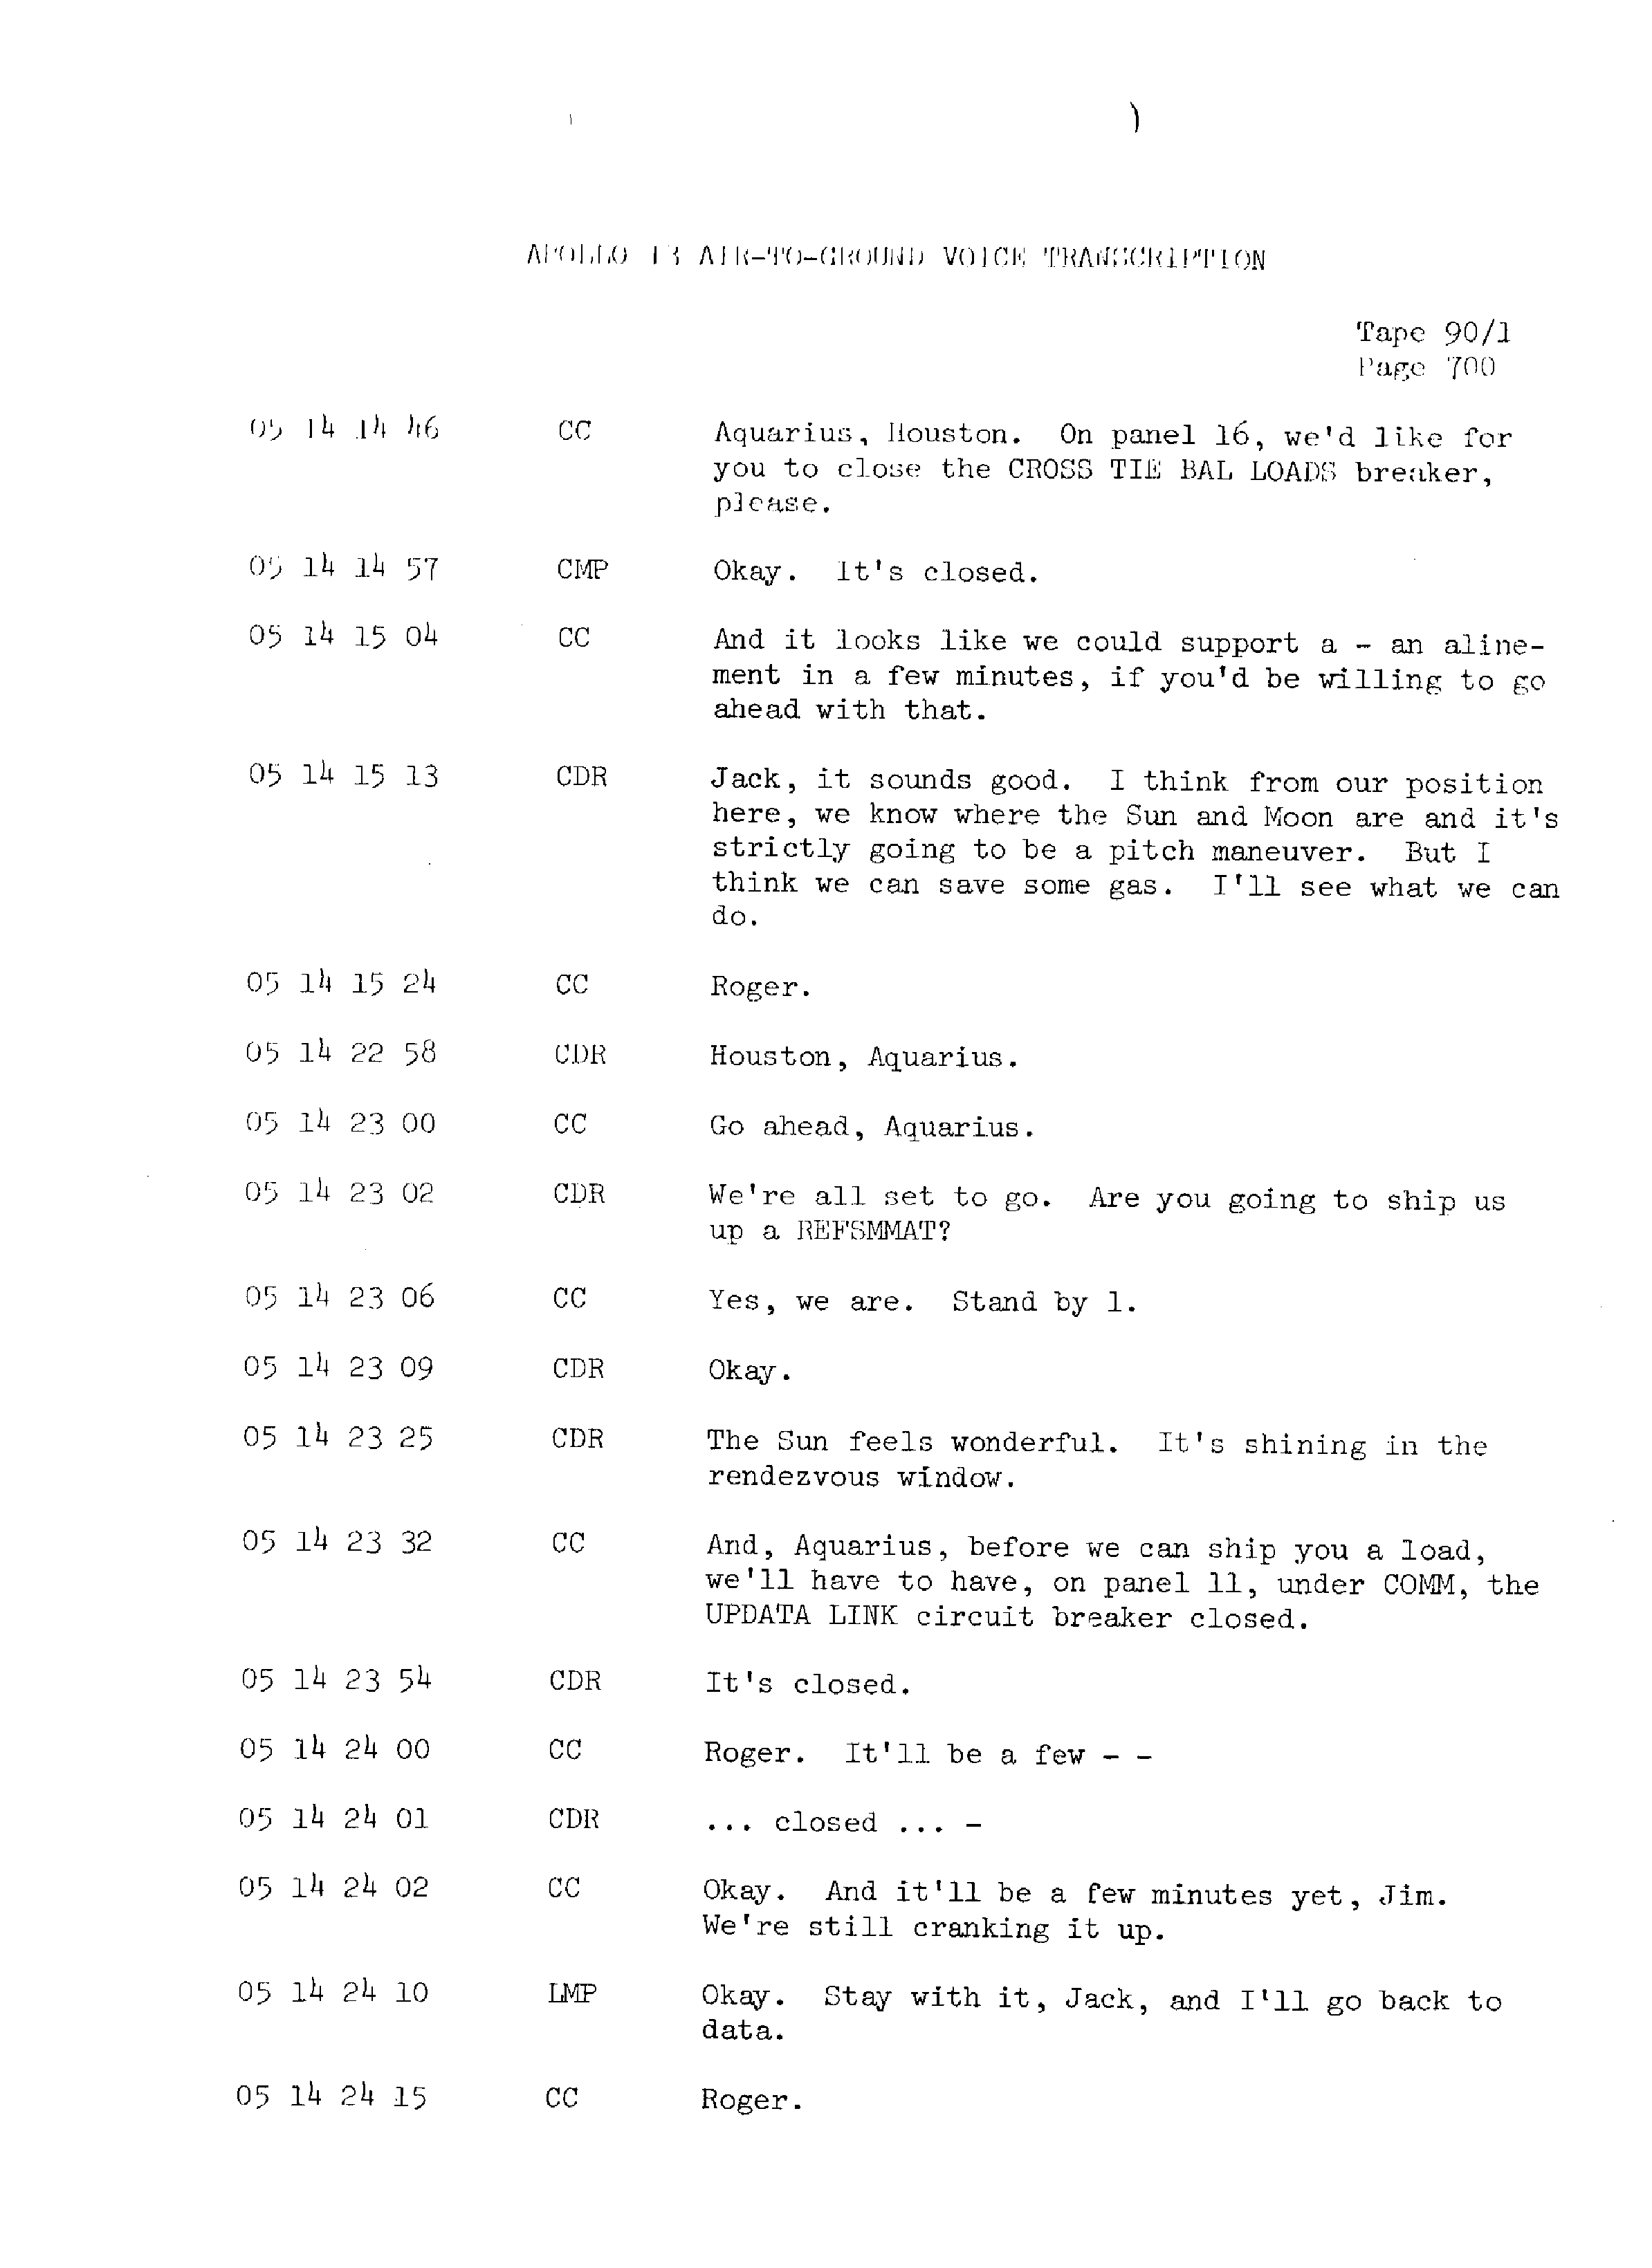 Page 707 of Apollo 13’s original transcript